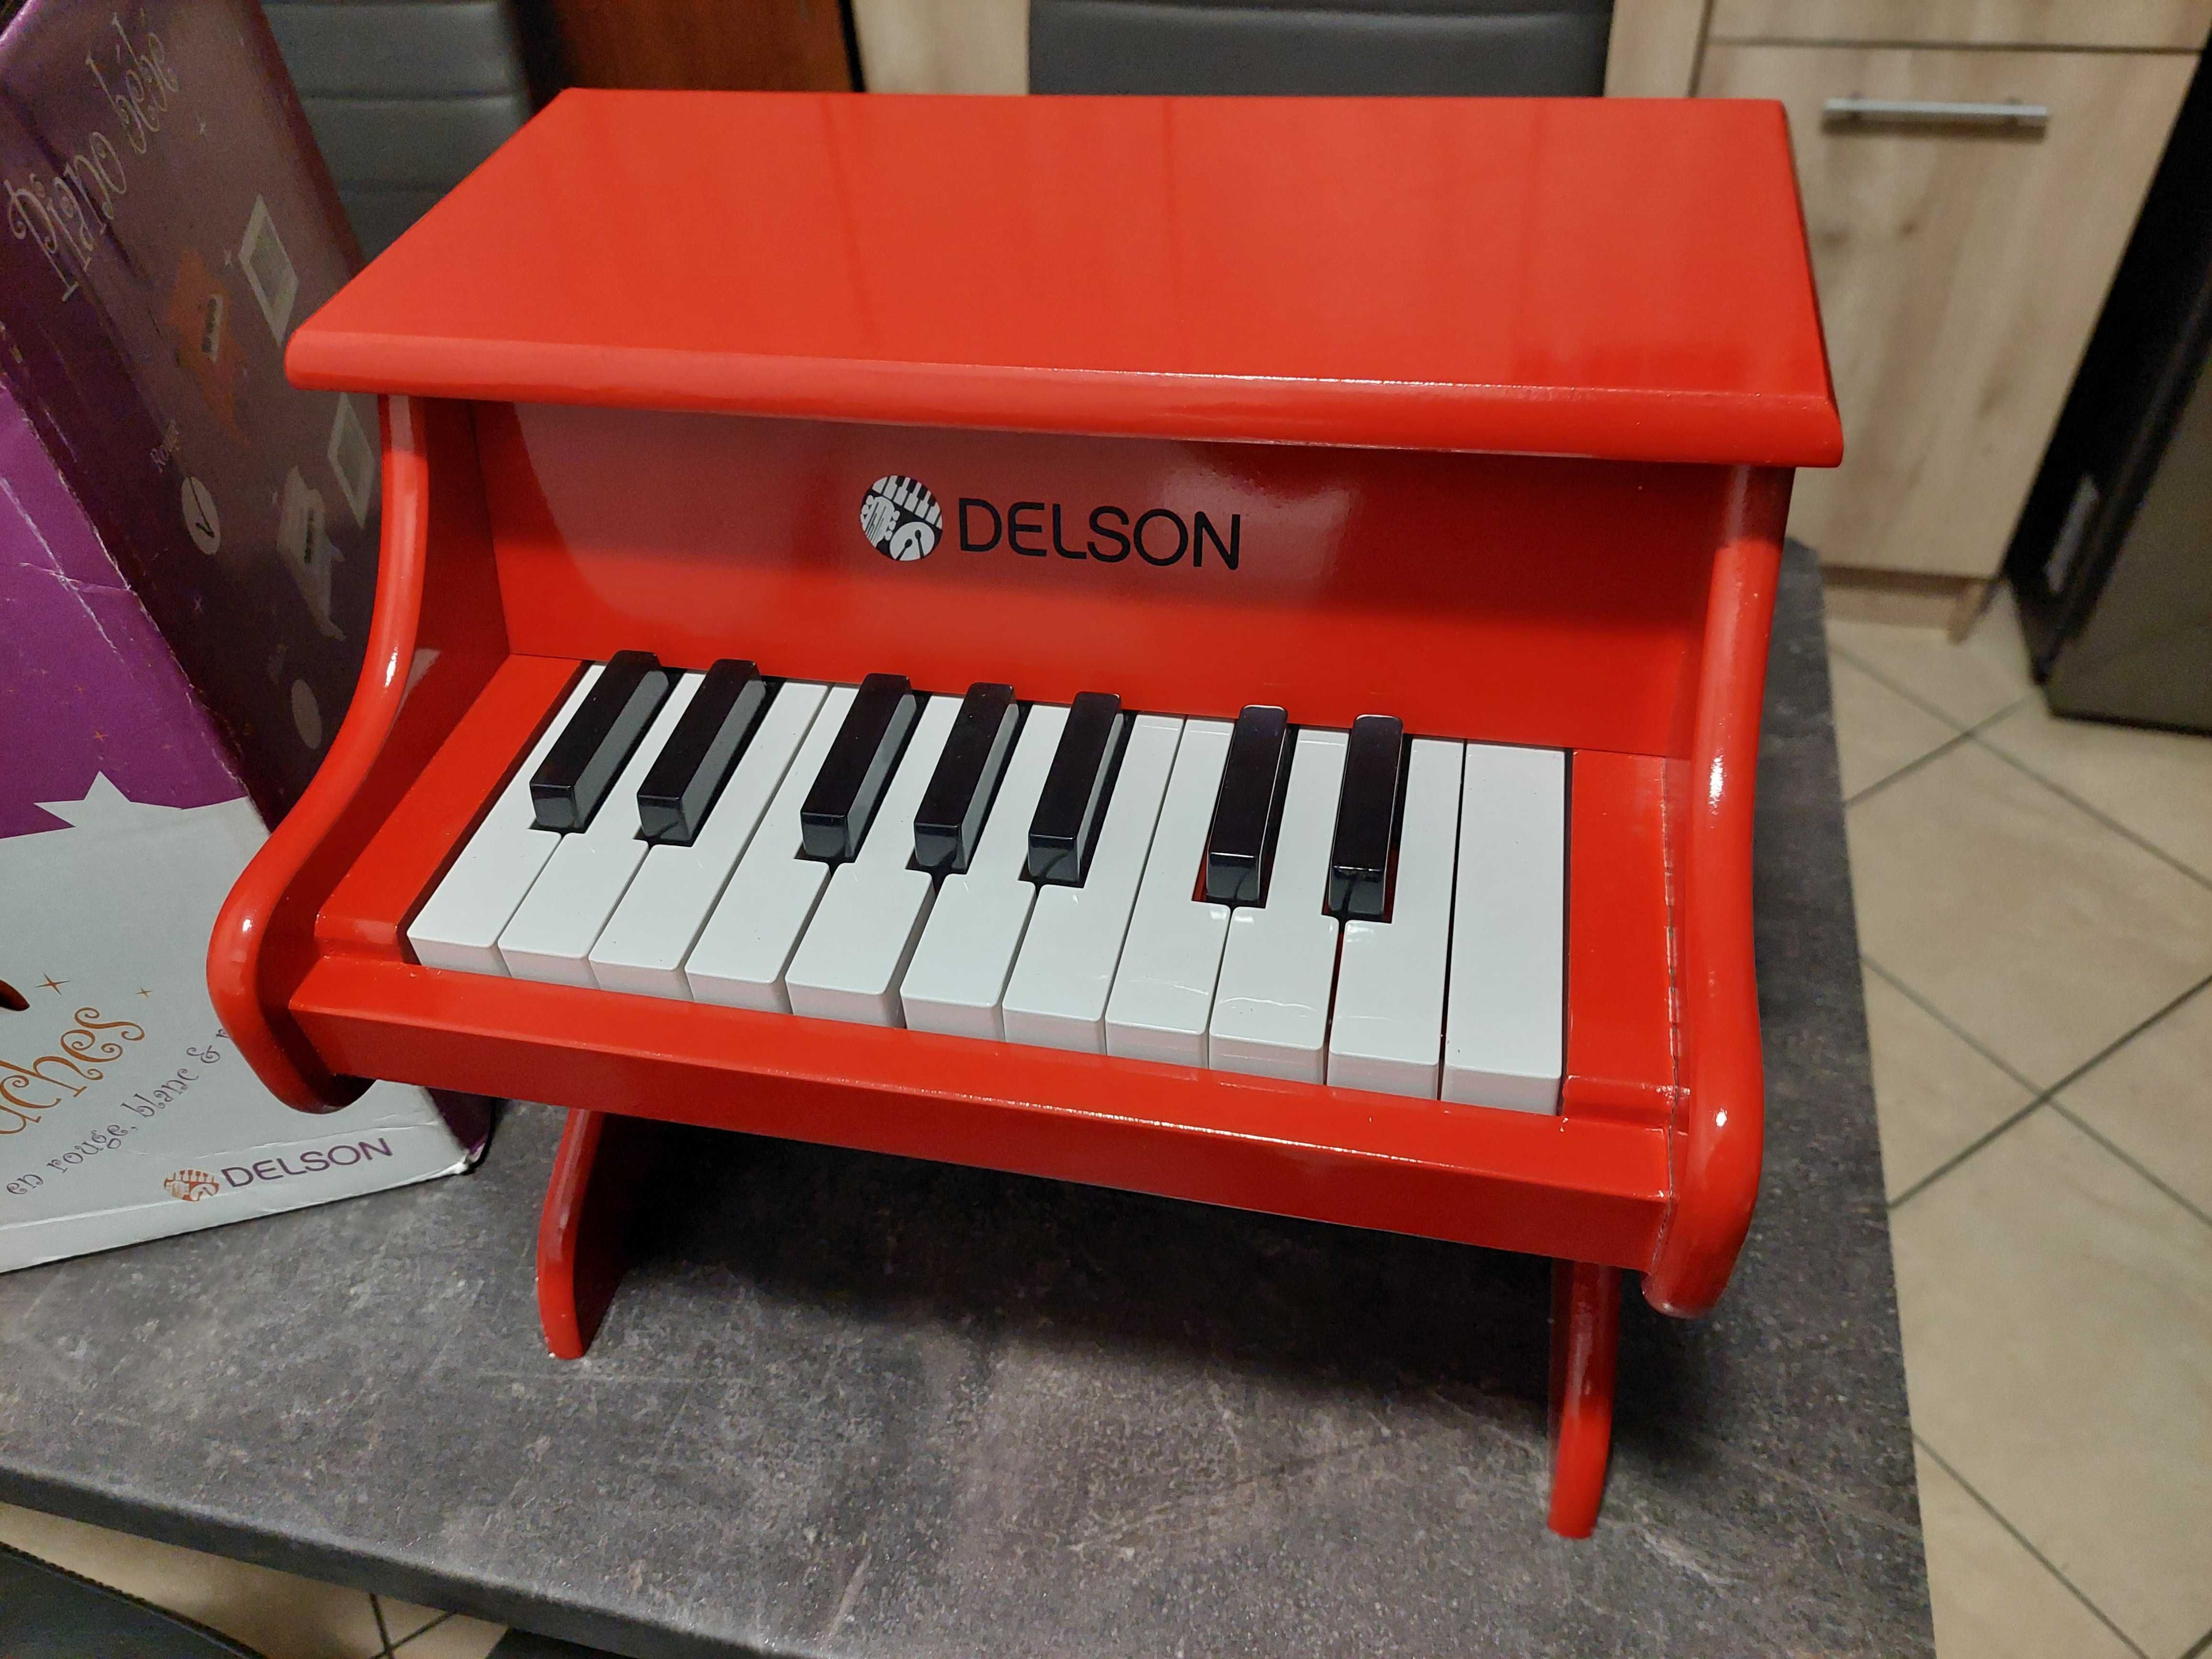 Drewniane pianino dla dzieci Delson 1822R 18 klawiszy czerwone